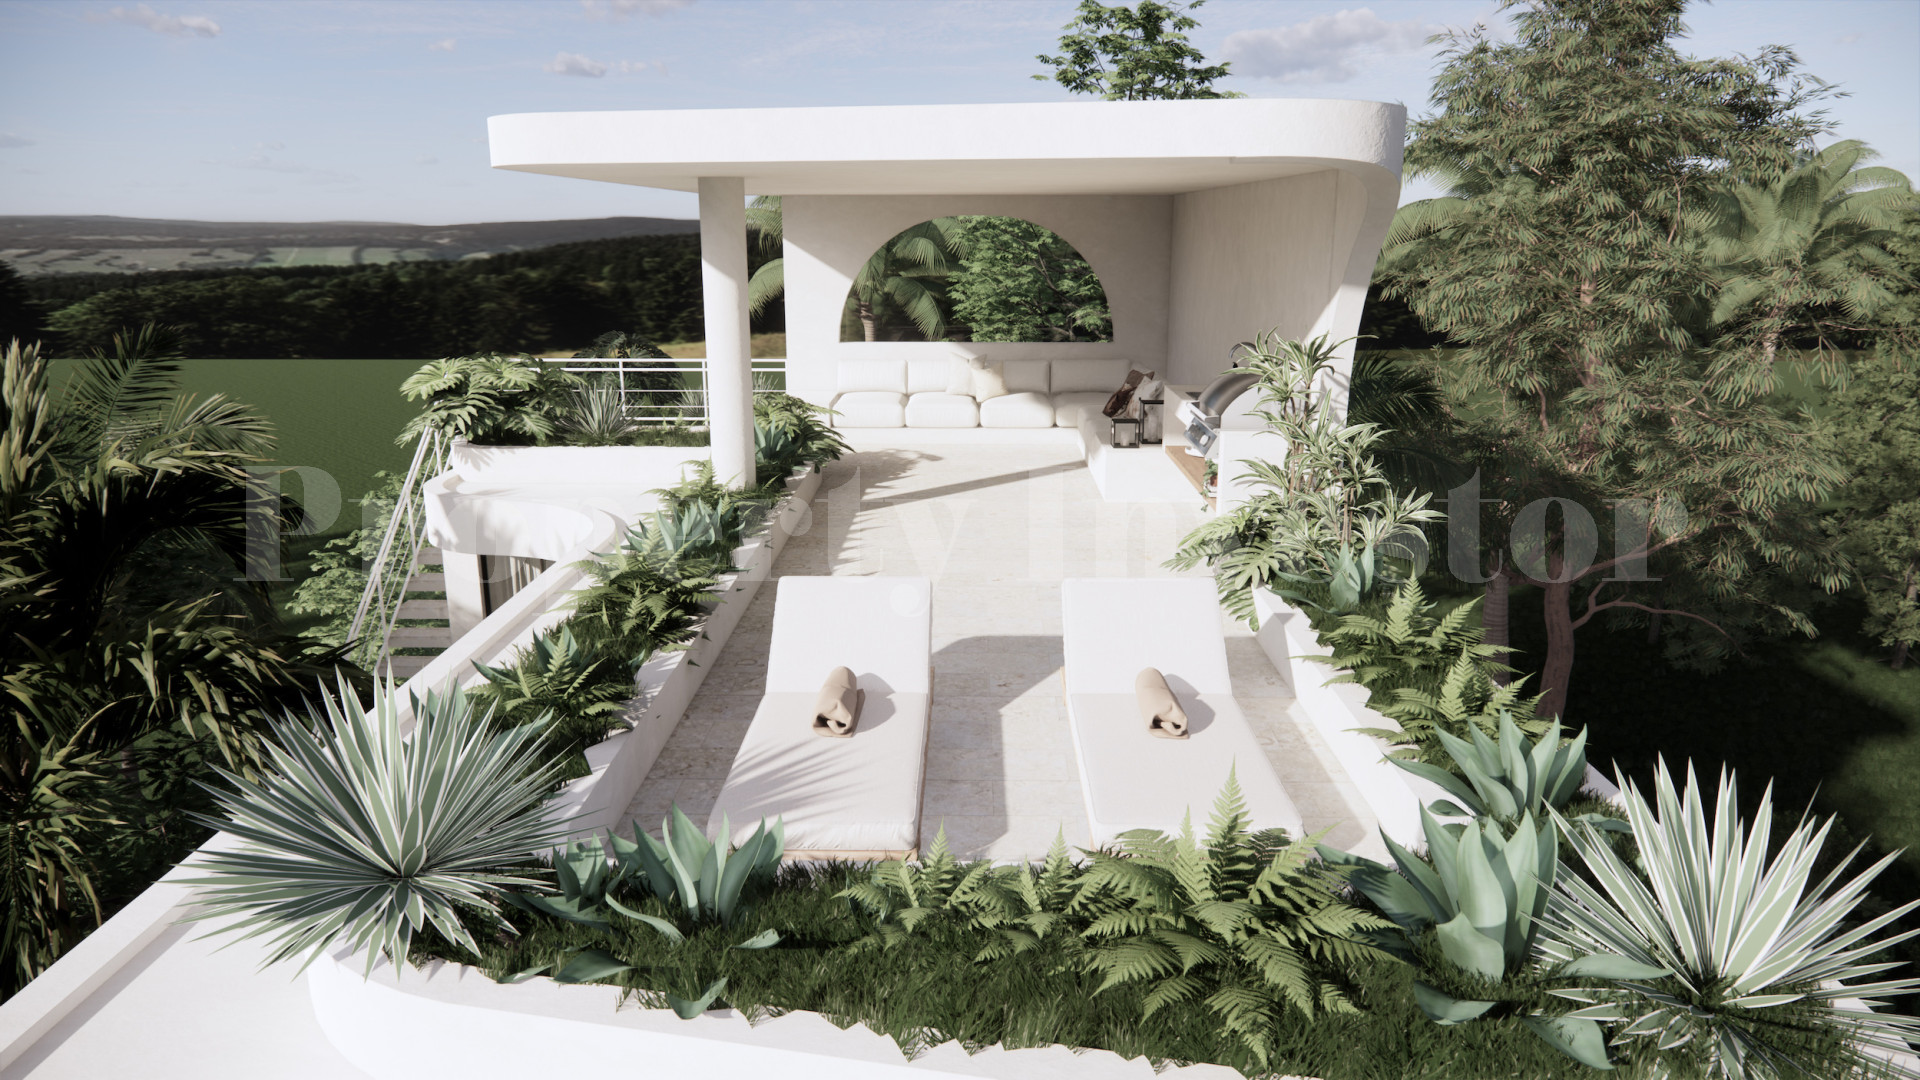 Продаётся современная роскошная вилла на 3 спальни с видом на океан под строительство от 395000$ в Улувату на Бали